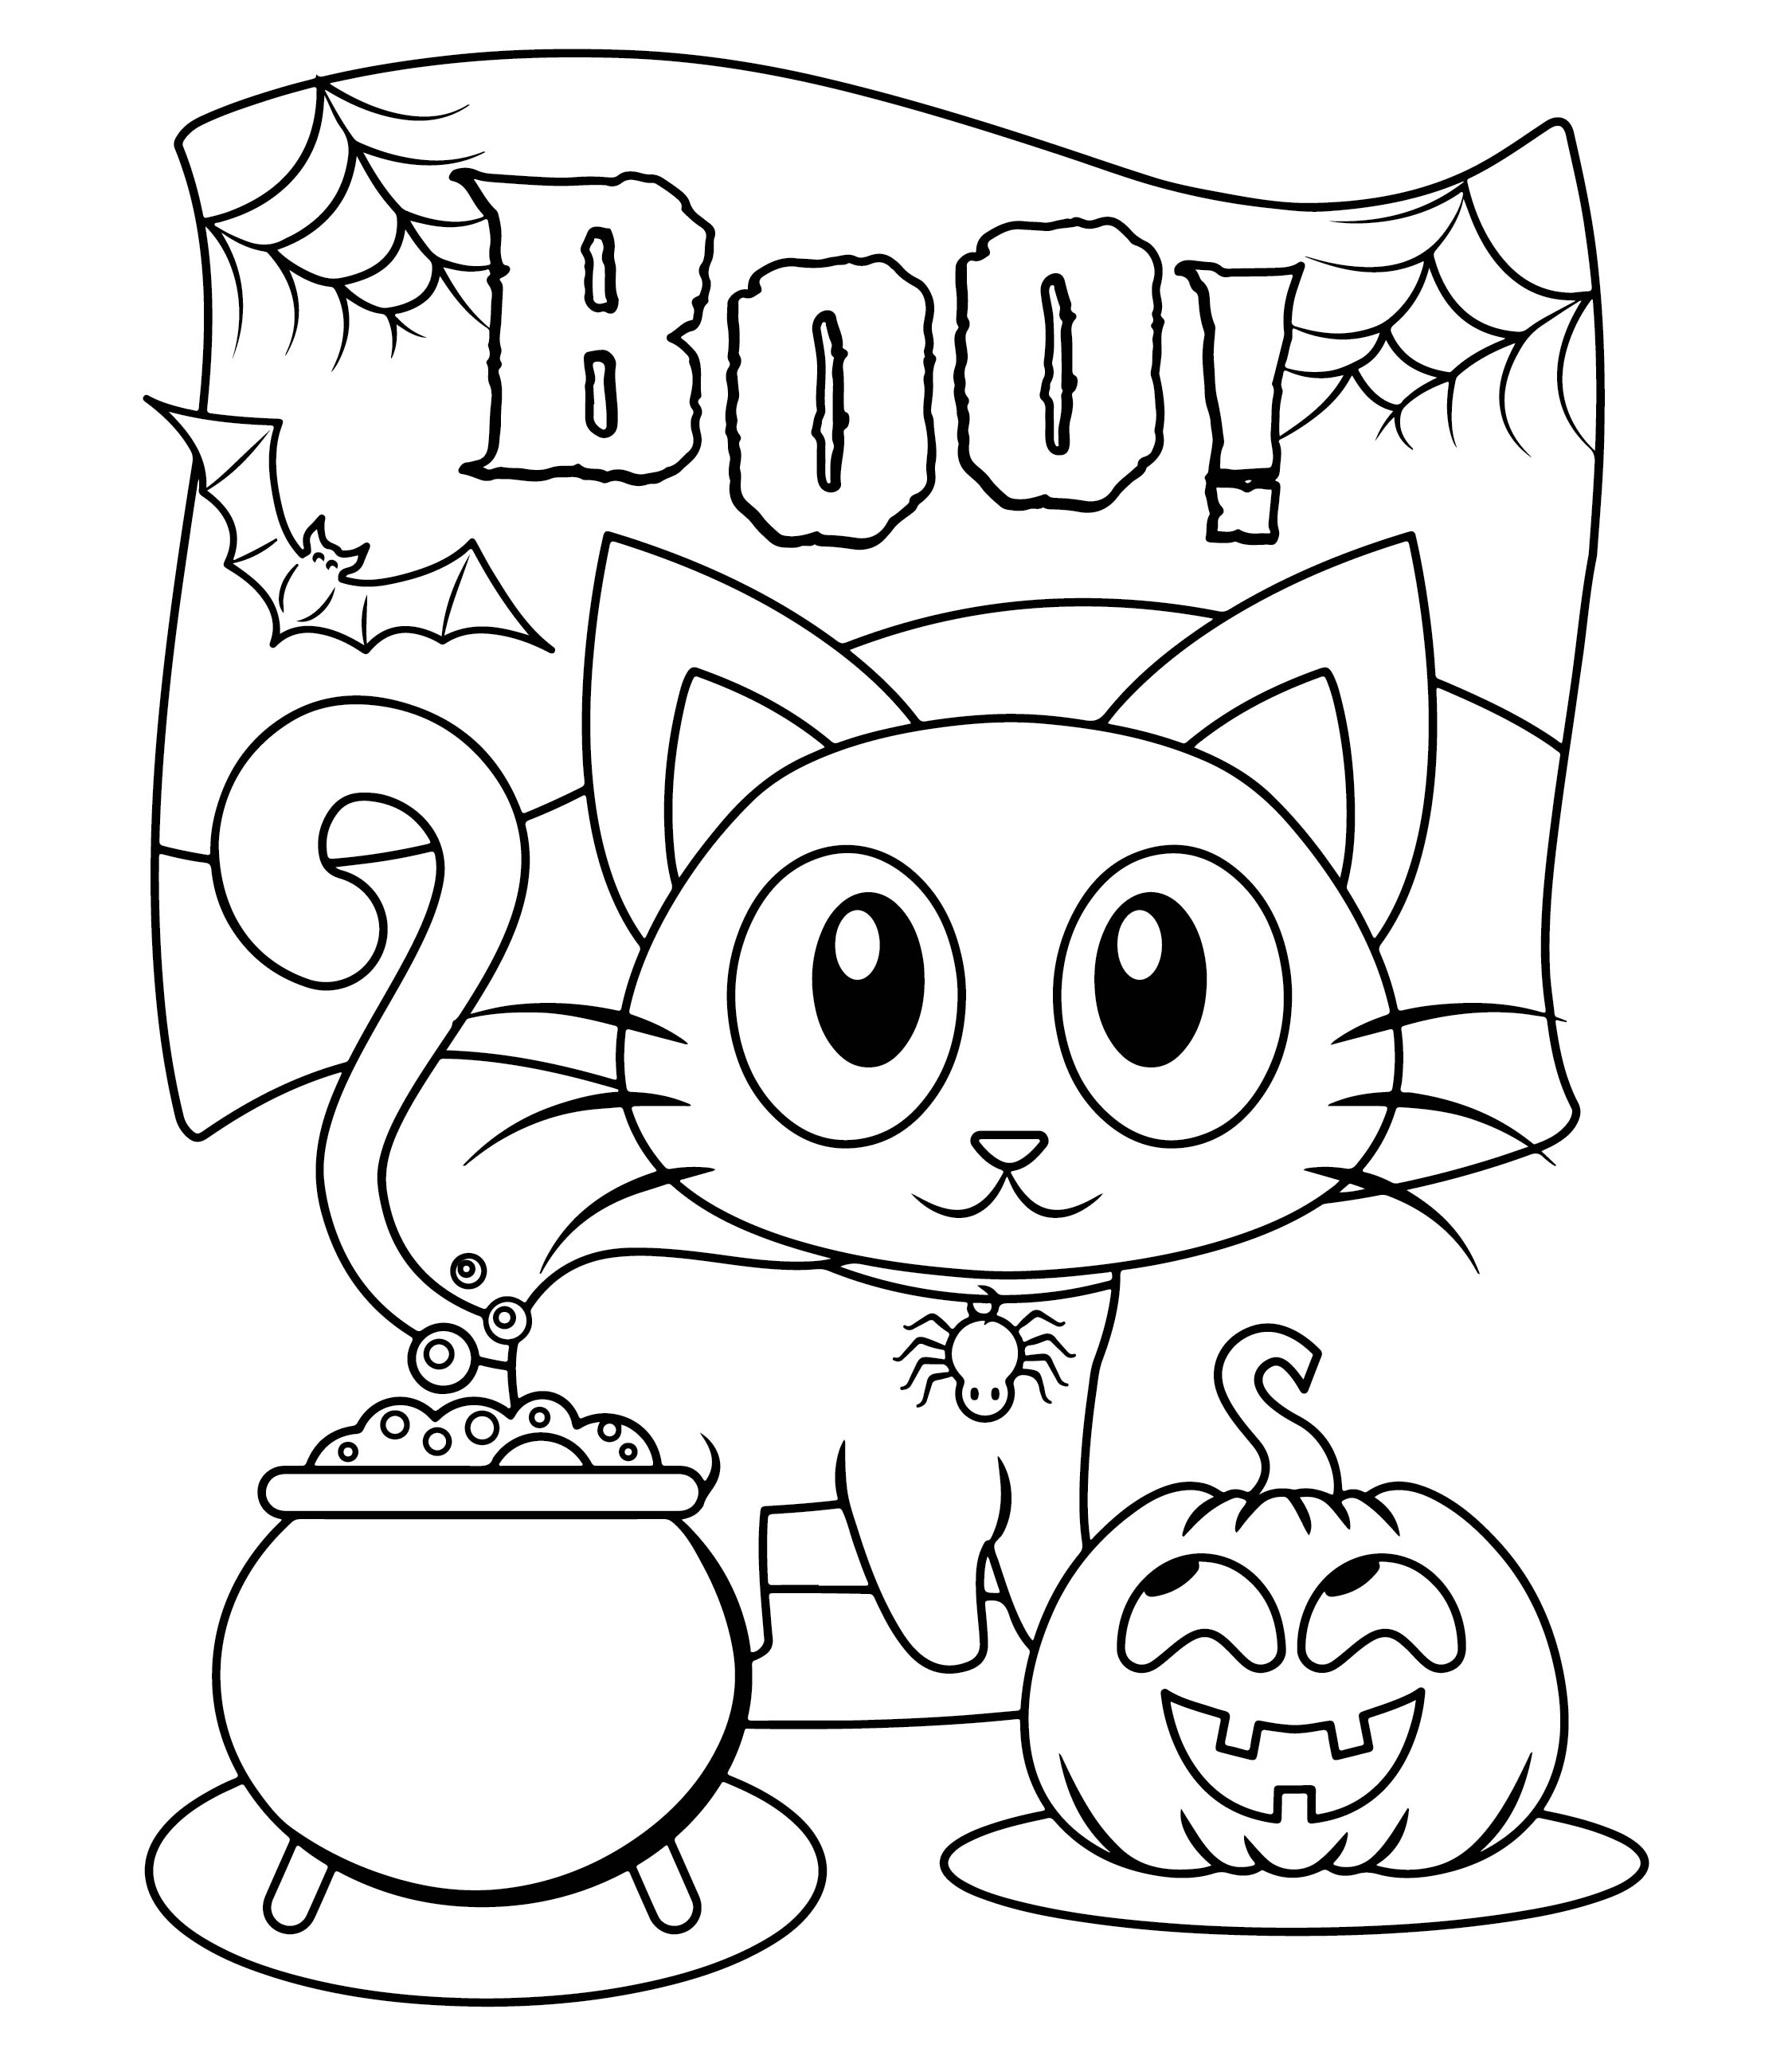 6 Best Images of Kindergarten Halloween Craft Printables   Free ...